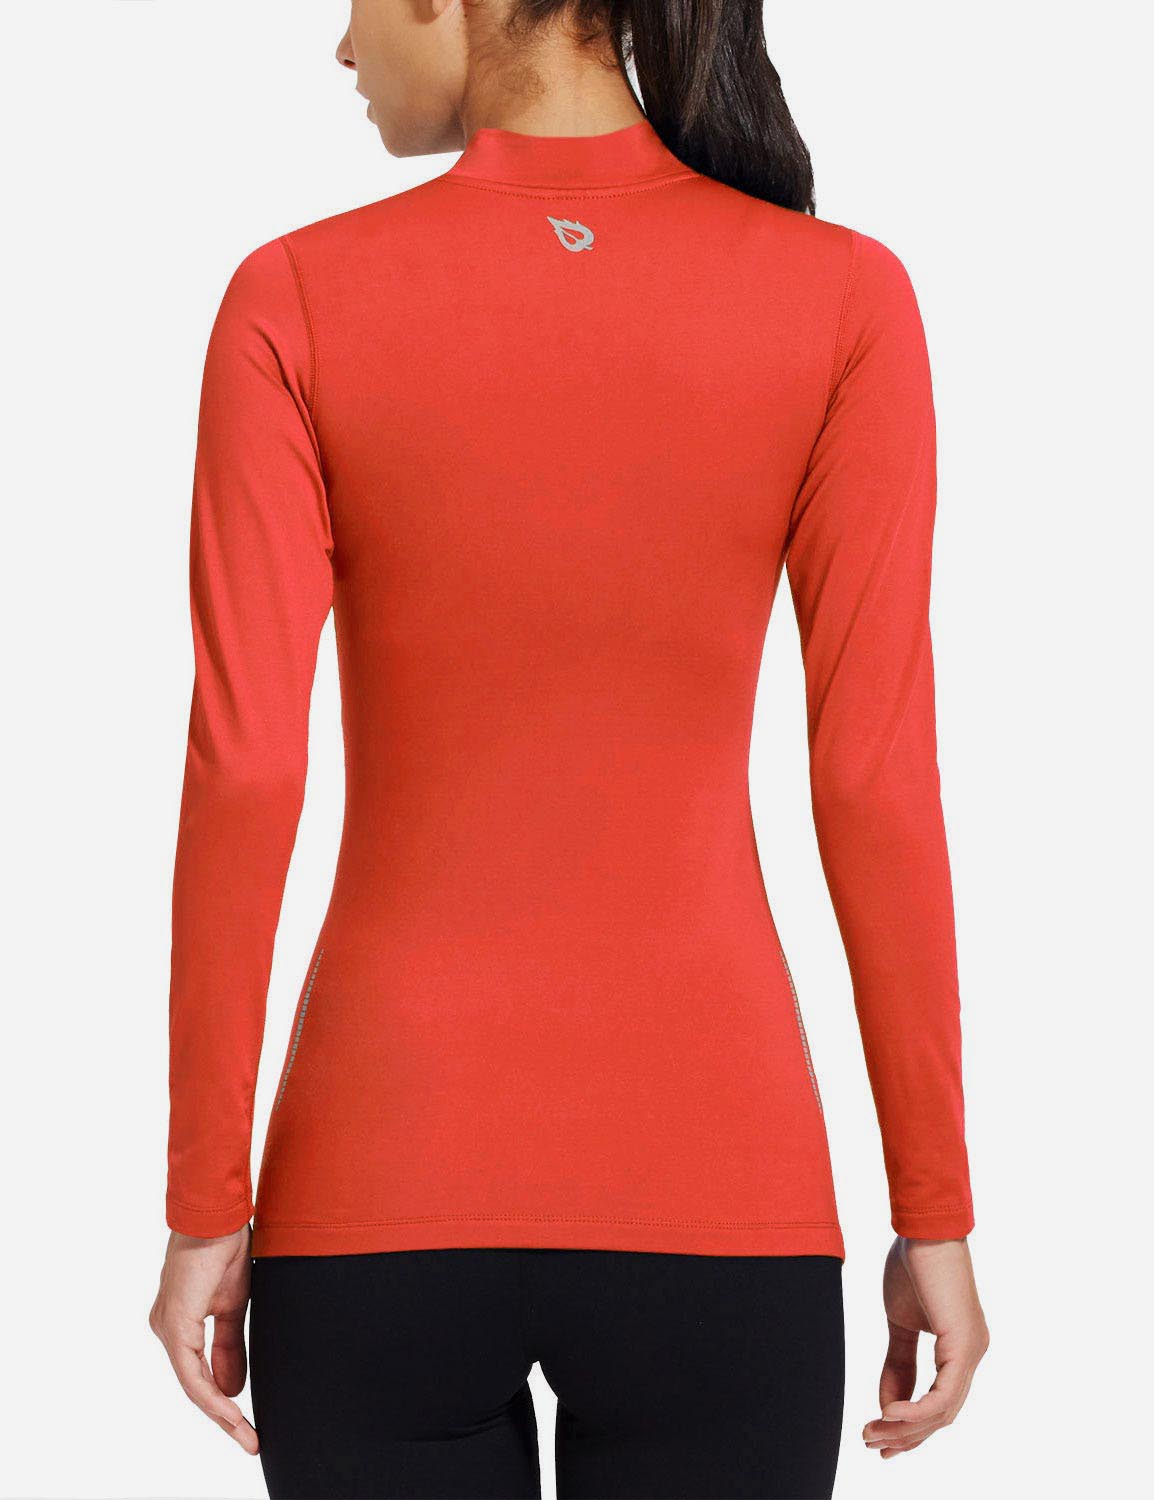 Baleaf Women's Basic Compression Mock-Neck Long Sleeved Shirt abd166 Coral Back